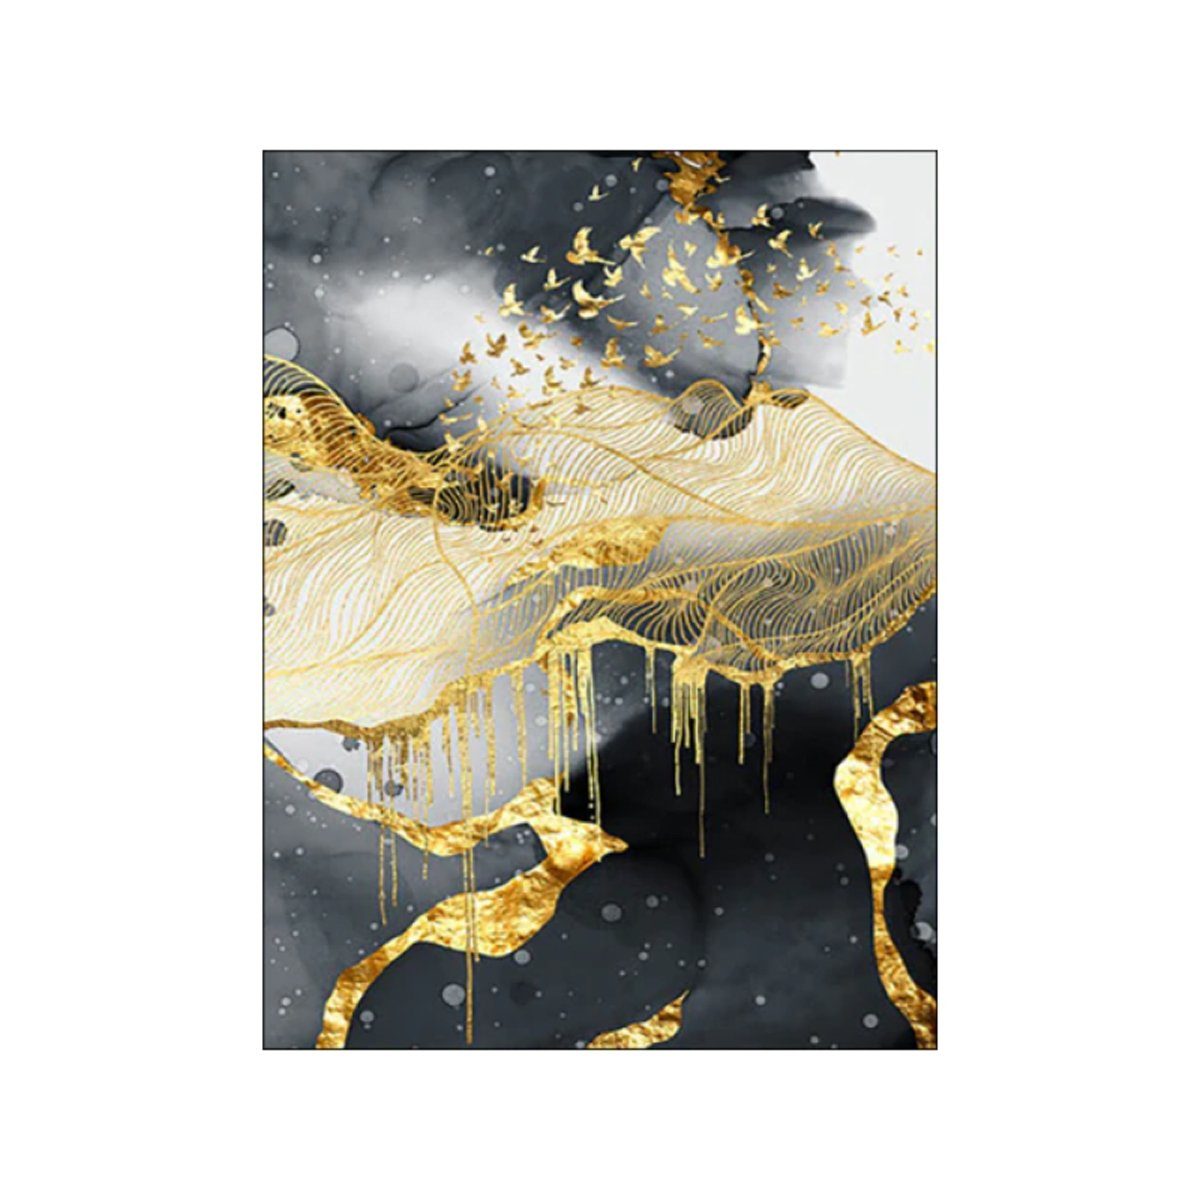 TPFLiving Kunstdruck (OHNE RAHMEN) Poster - Leinwand - Wandbild, Abstrakte Motive - (Einzeln und im günstigen 3-er Set - Wanddeko Wohnzimmer), Farben: Gold, Grau, Schwarz - Größe: 10x15cm